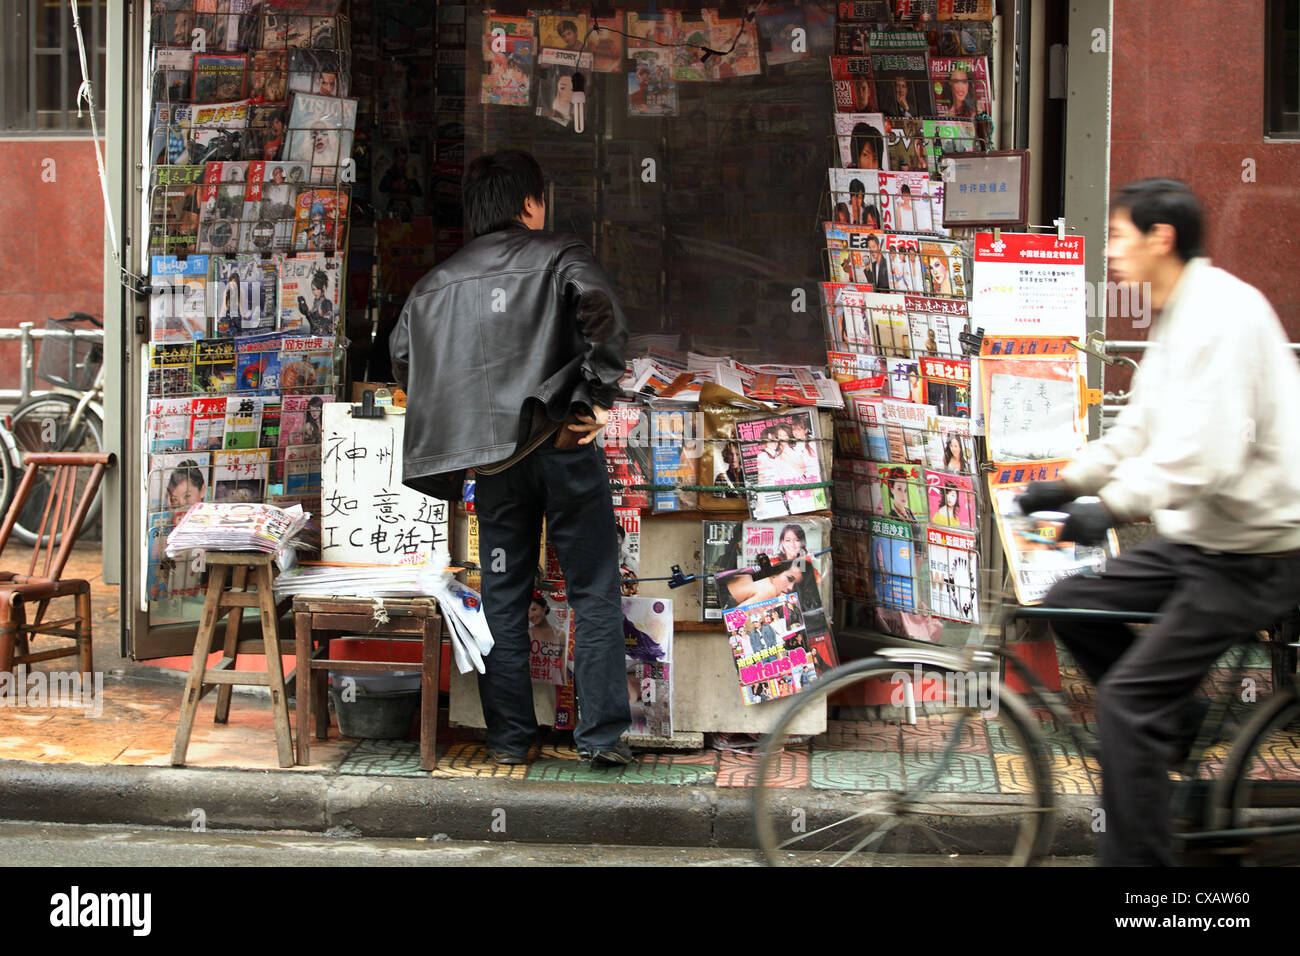 Shanghai, man at a newsstand Stock Photo